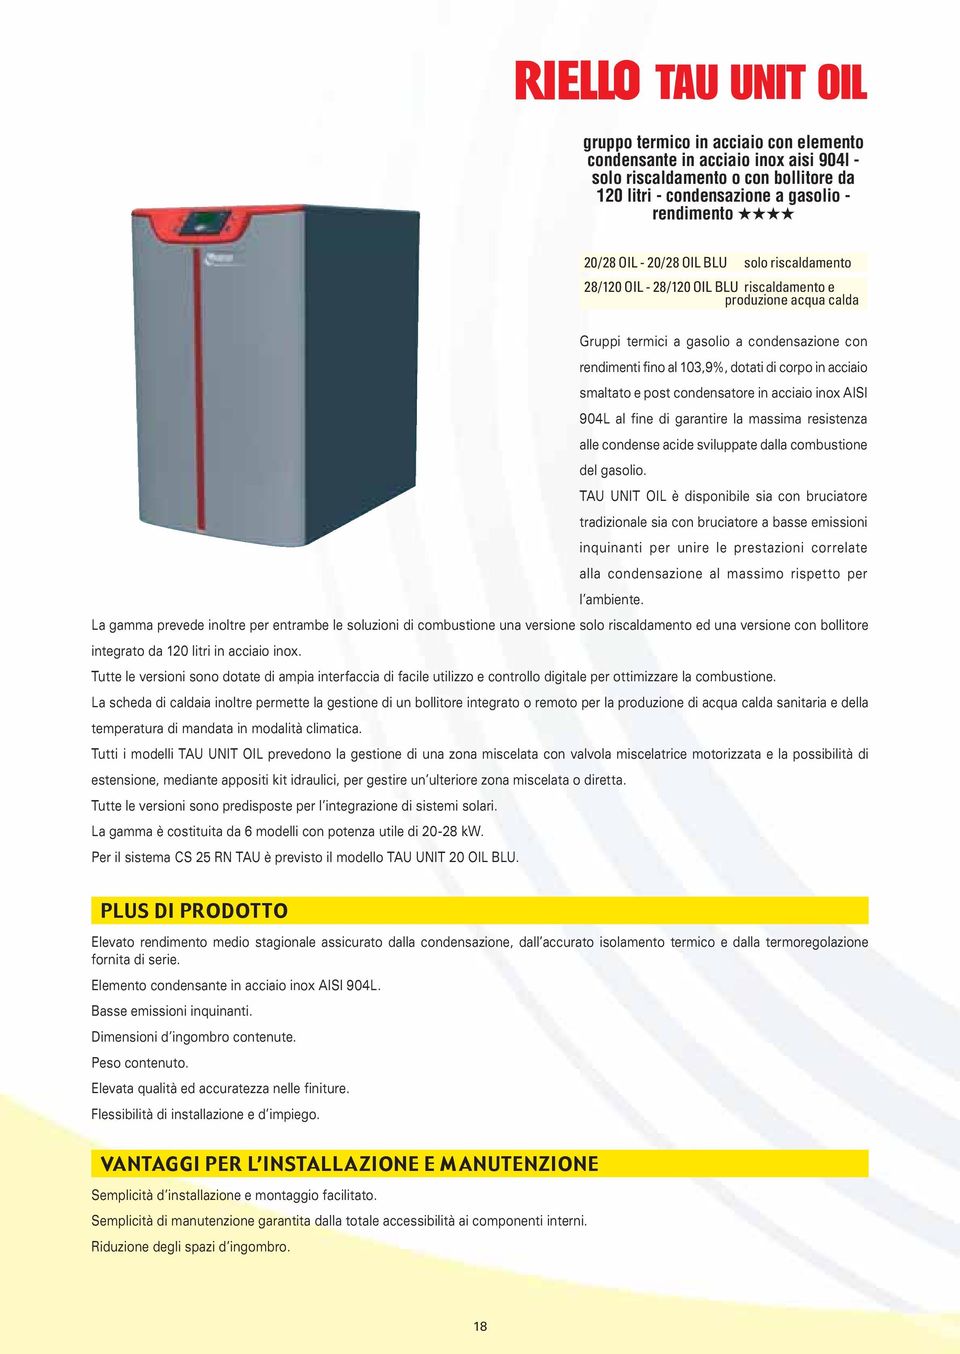 condensatore in acciaio inox AISI 904L al fine di garantire la massima resistenza alle condense acide sviluppate dalla combustione del gasolio.